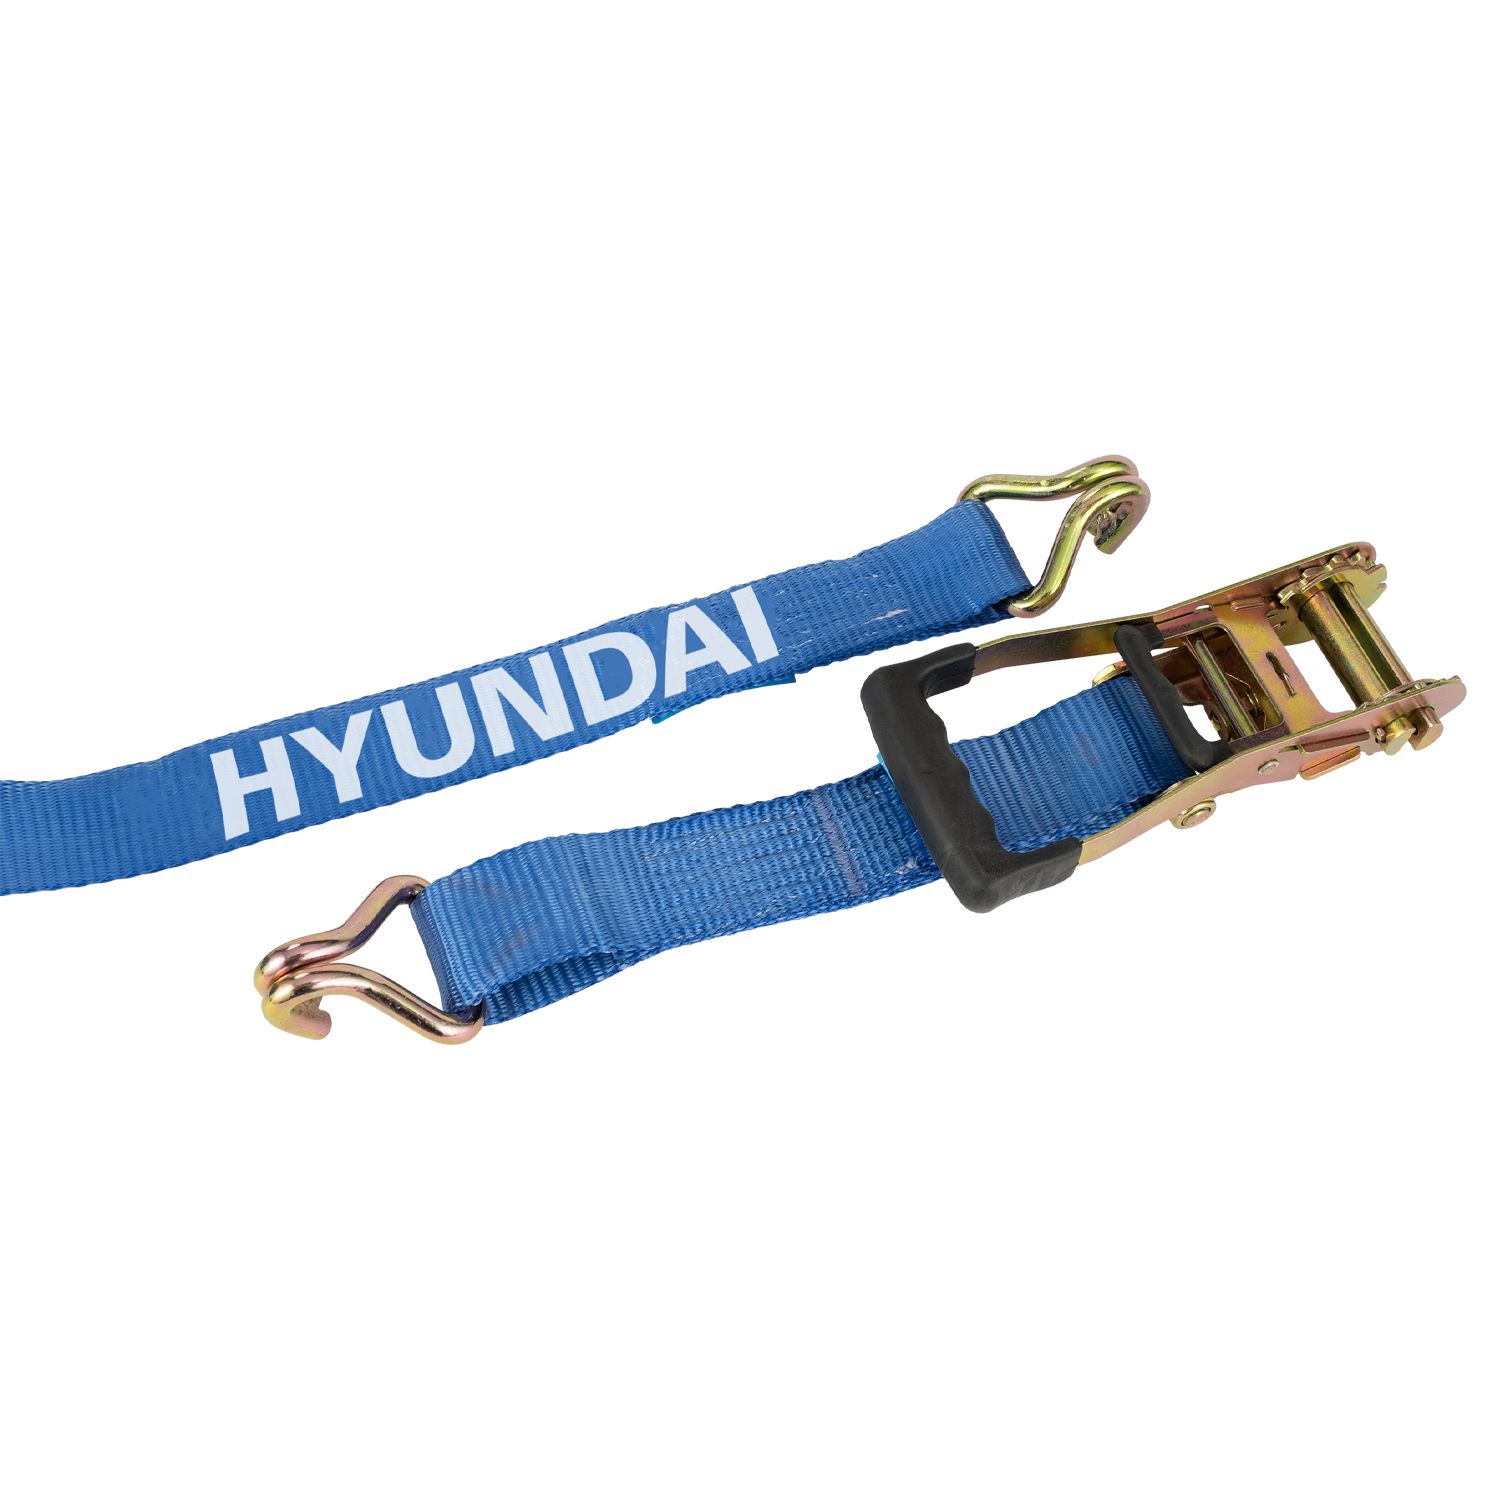 Hyundai spanband met ratel 50mmx8m